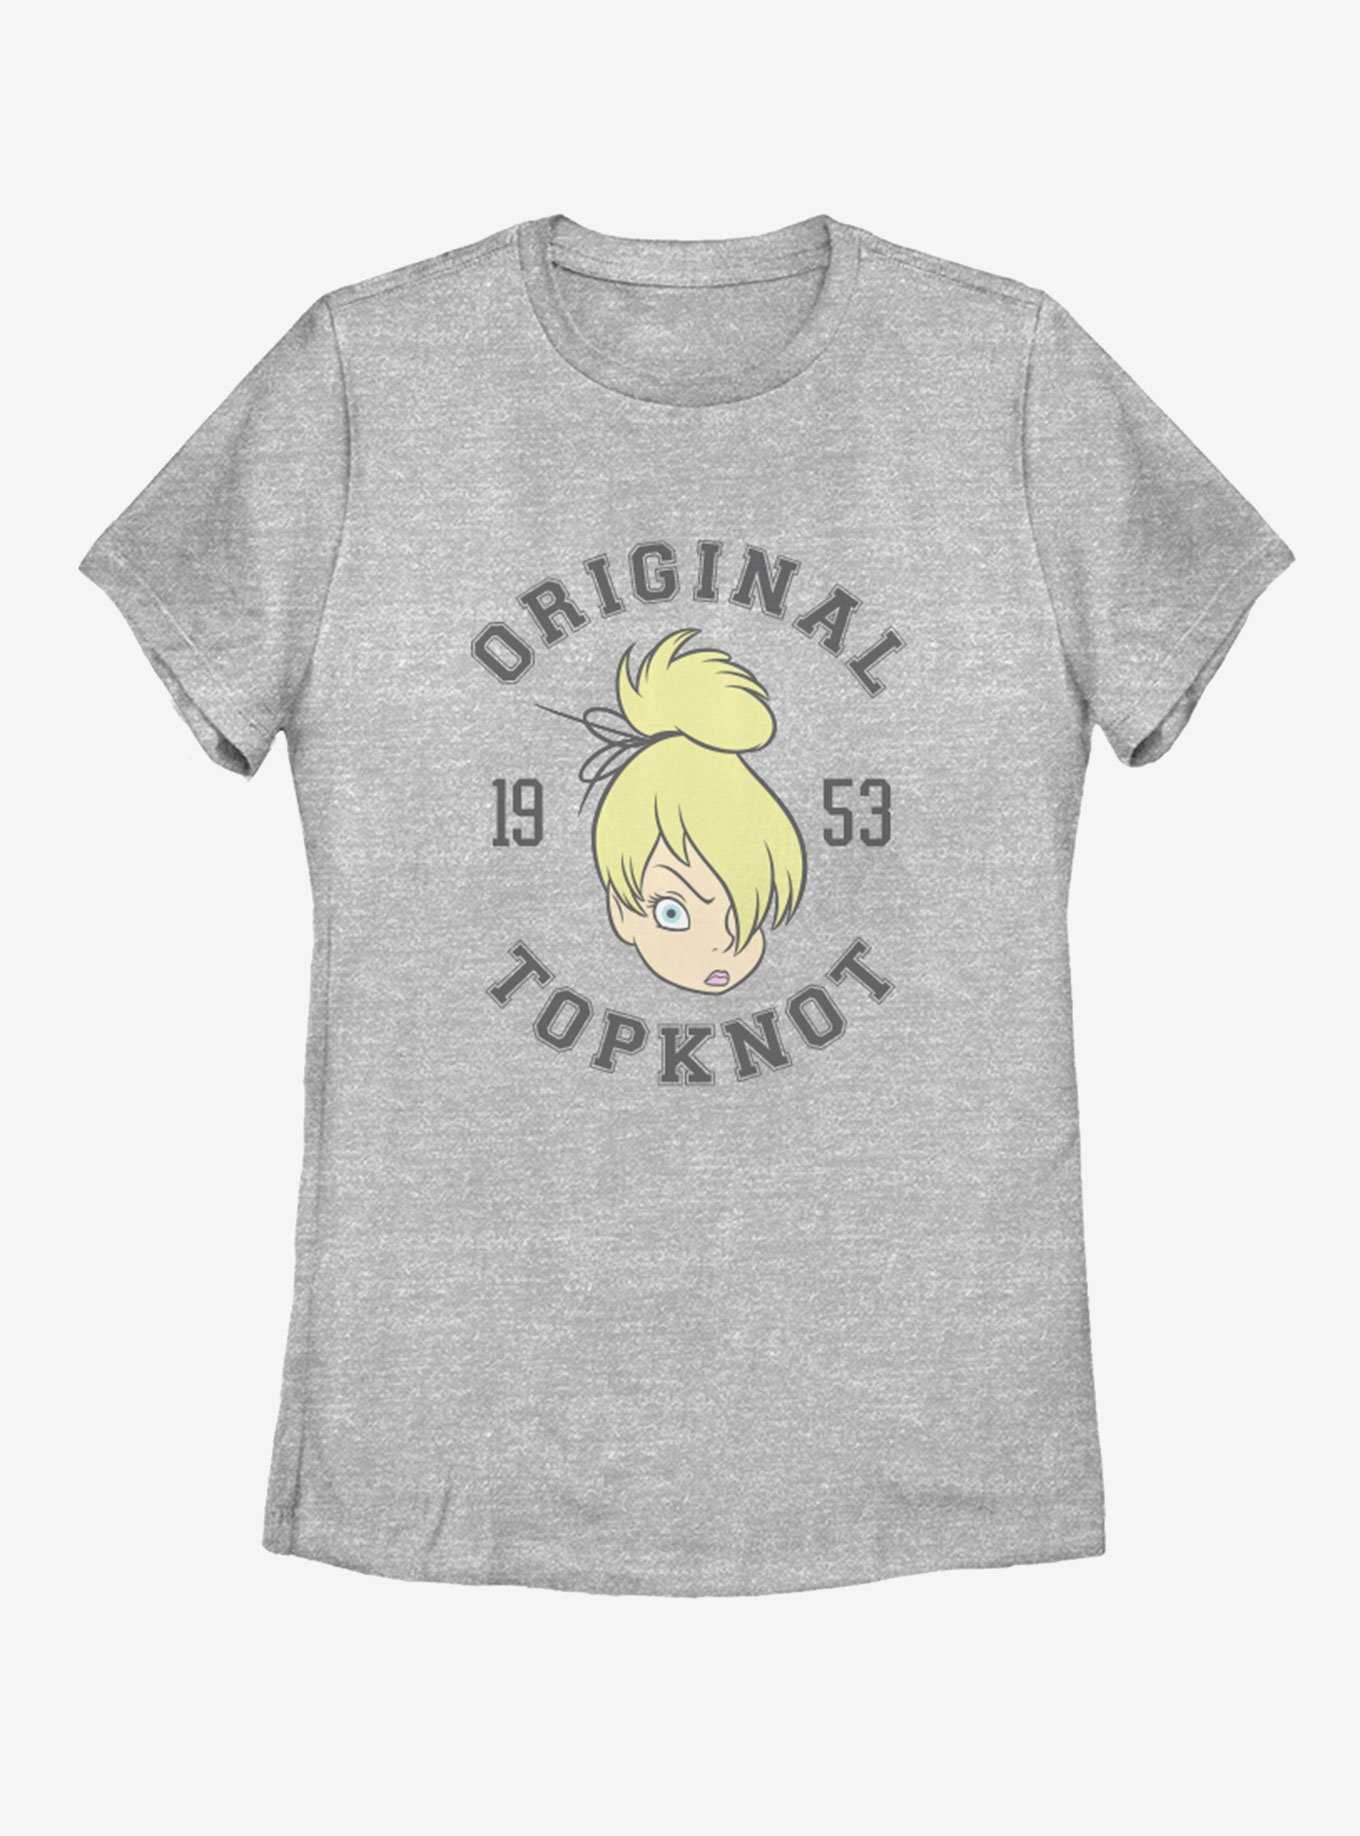 Disney Tinker Bell OG Topknot 53 Womens T-Shirt, , hi-res